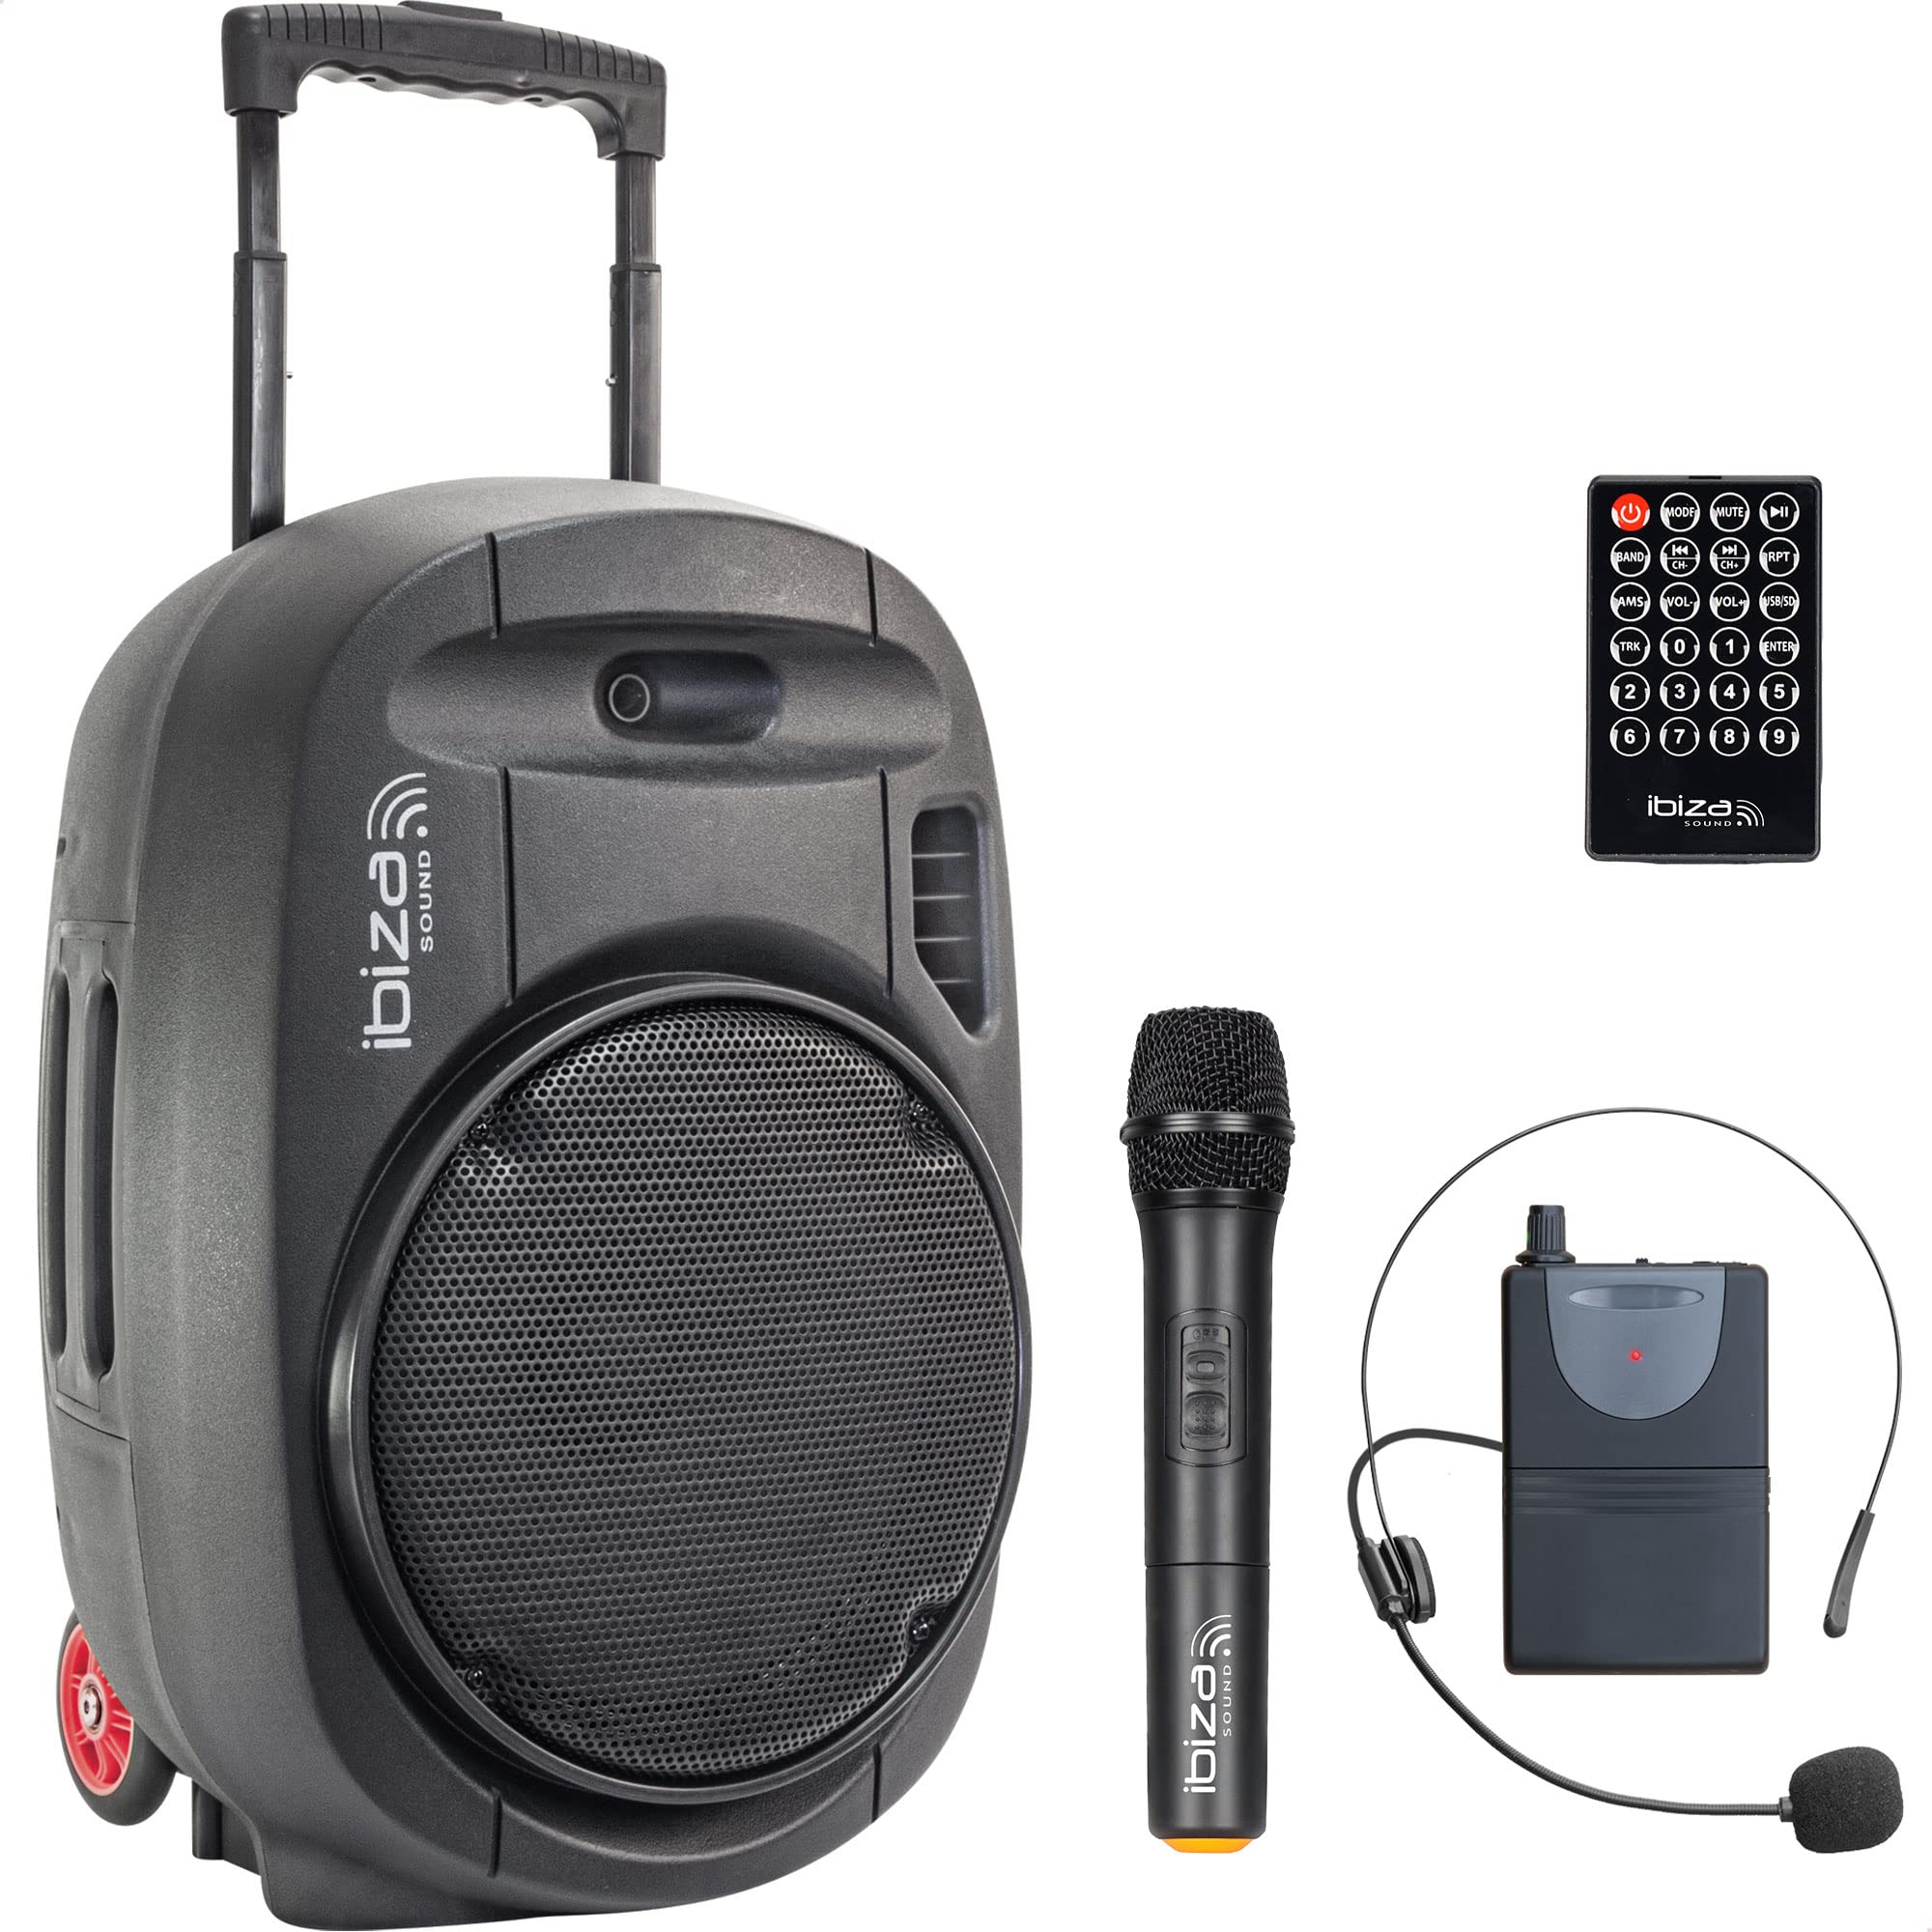 PORT12UHF-MKII - IBIZA - Tragbarer Lautsprecher 12"/700W MAX mit 2 Mikrofonen (UHF), Fernbedienung und Schutzhülle - Bluetooth, USB, SD - 5-7 Std. Wiedergabezeit.